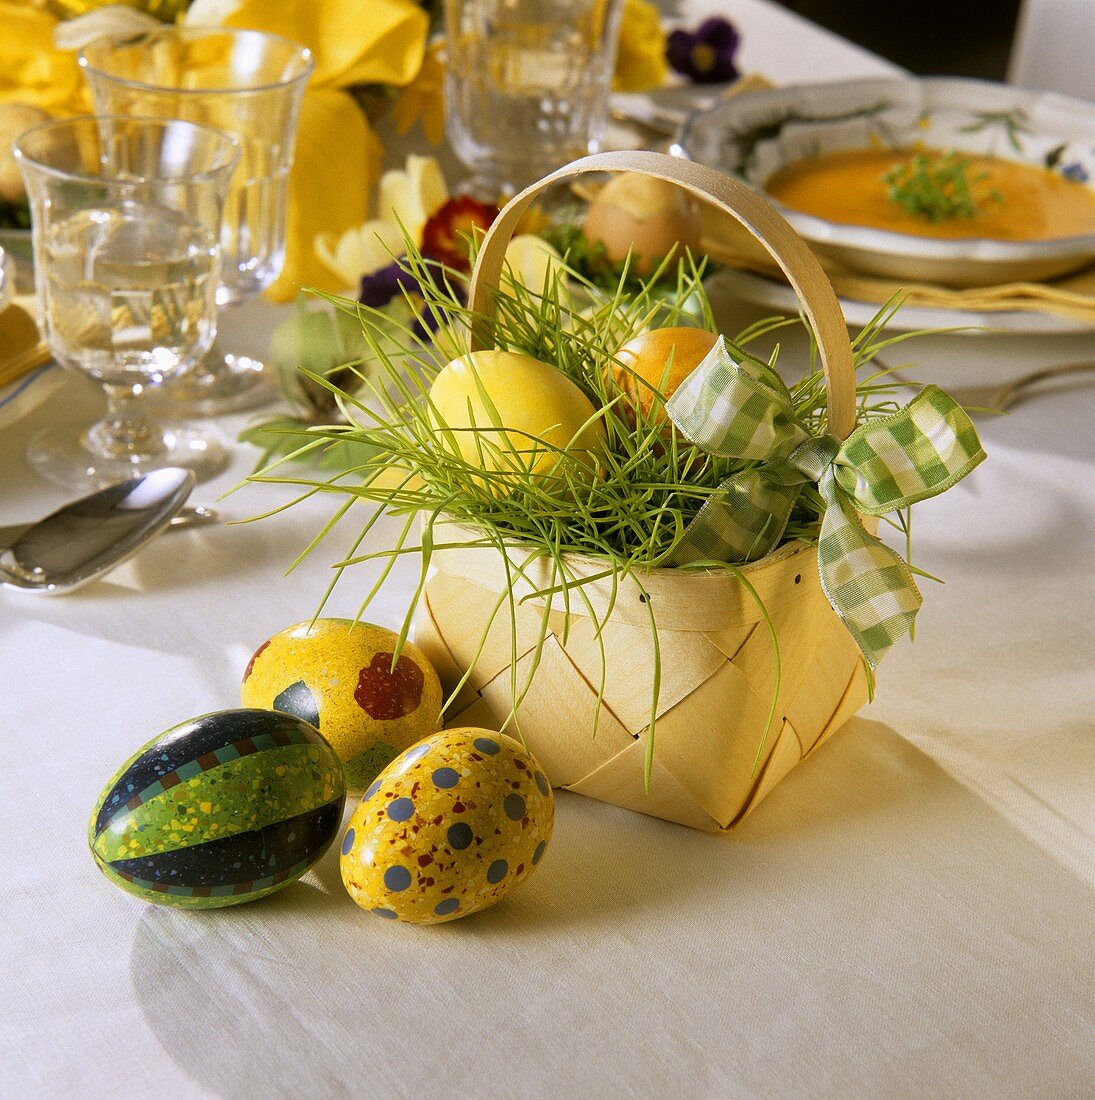 Osterkörbchen: Spankorb mit Ostereiern auf dem Tisch